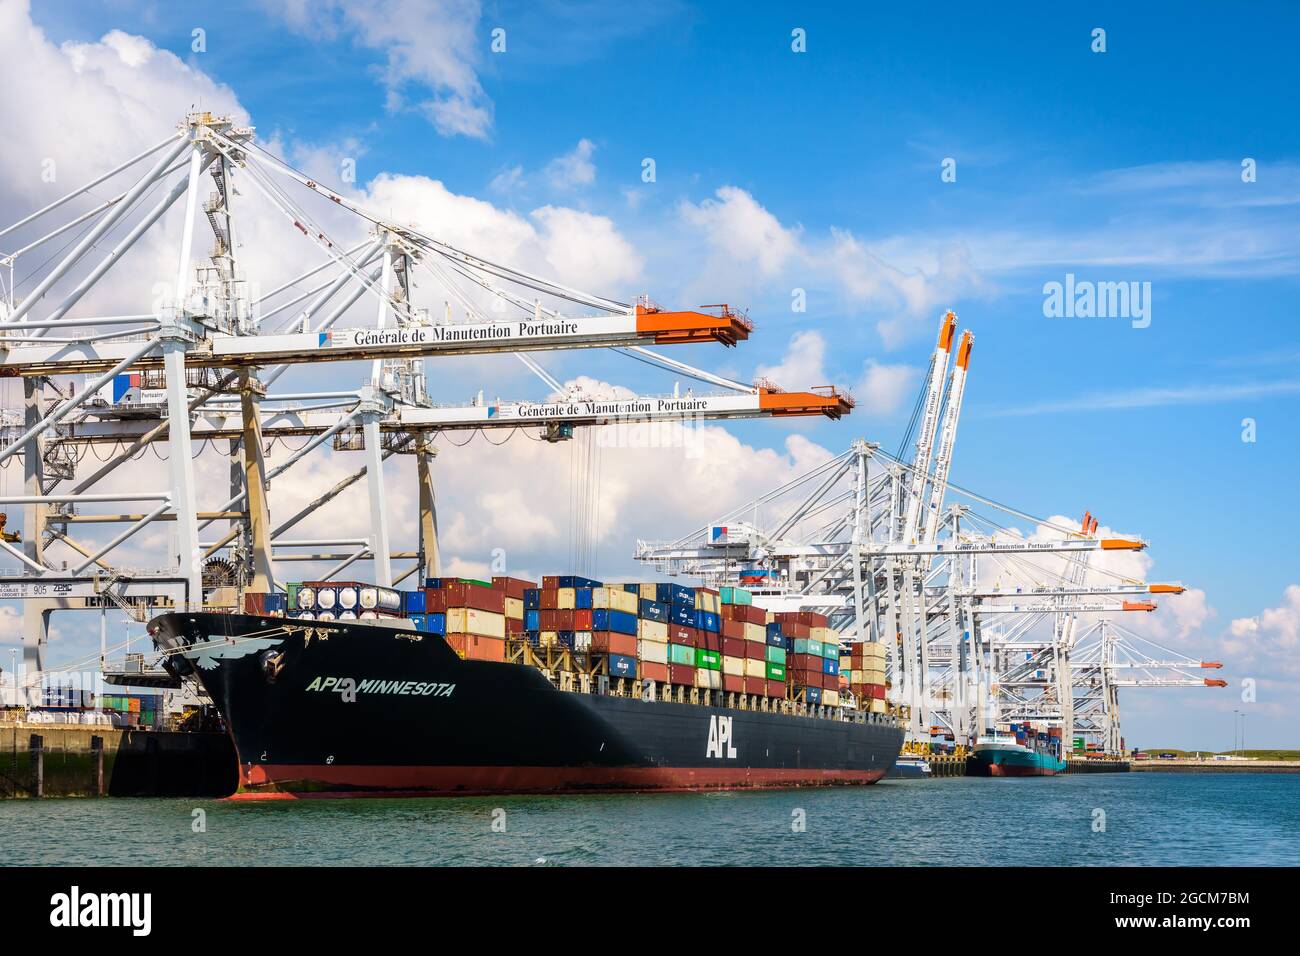 La nave portacontainer APL Minnesota è attraccata nel terminal dei container Port 2000 a le Havre, in Francia, e viene scaricata con gru a portale post-panamax. Foto Stock